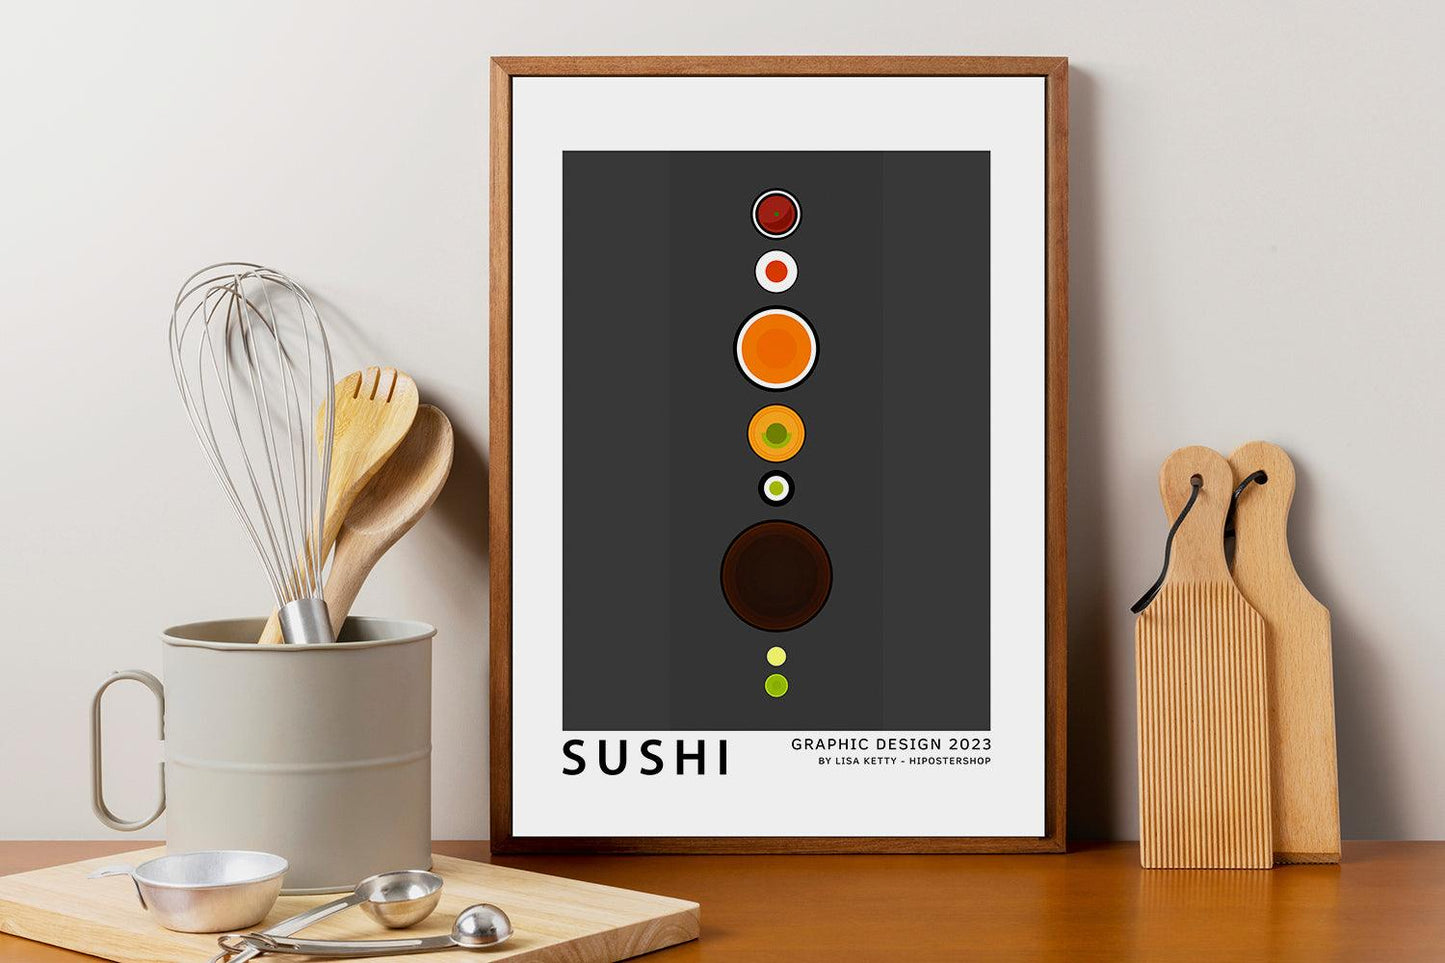 Sushi Poster - HiPosterShop